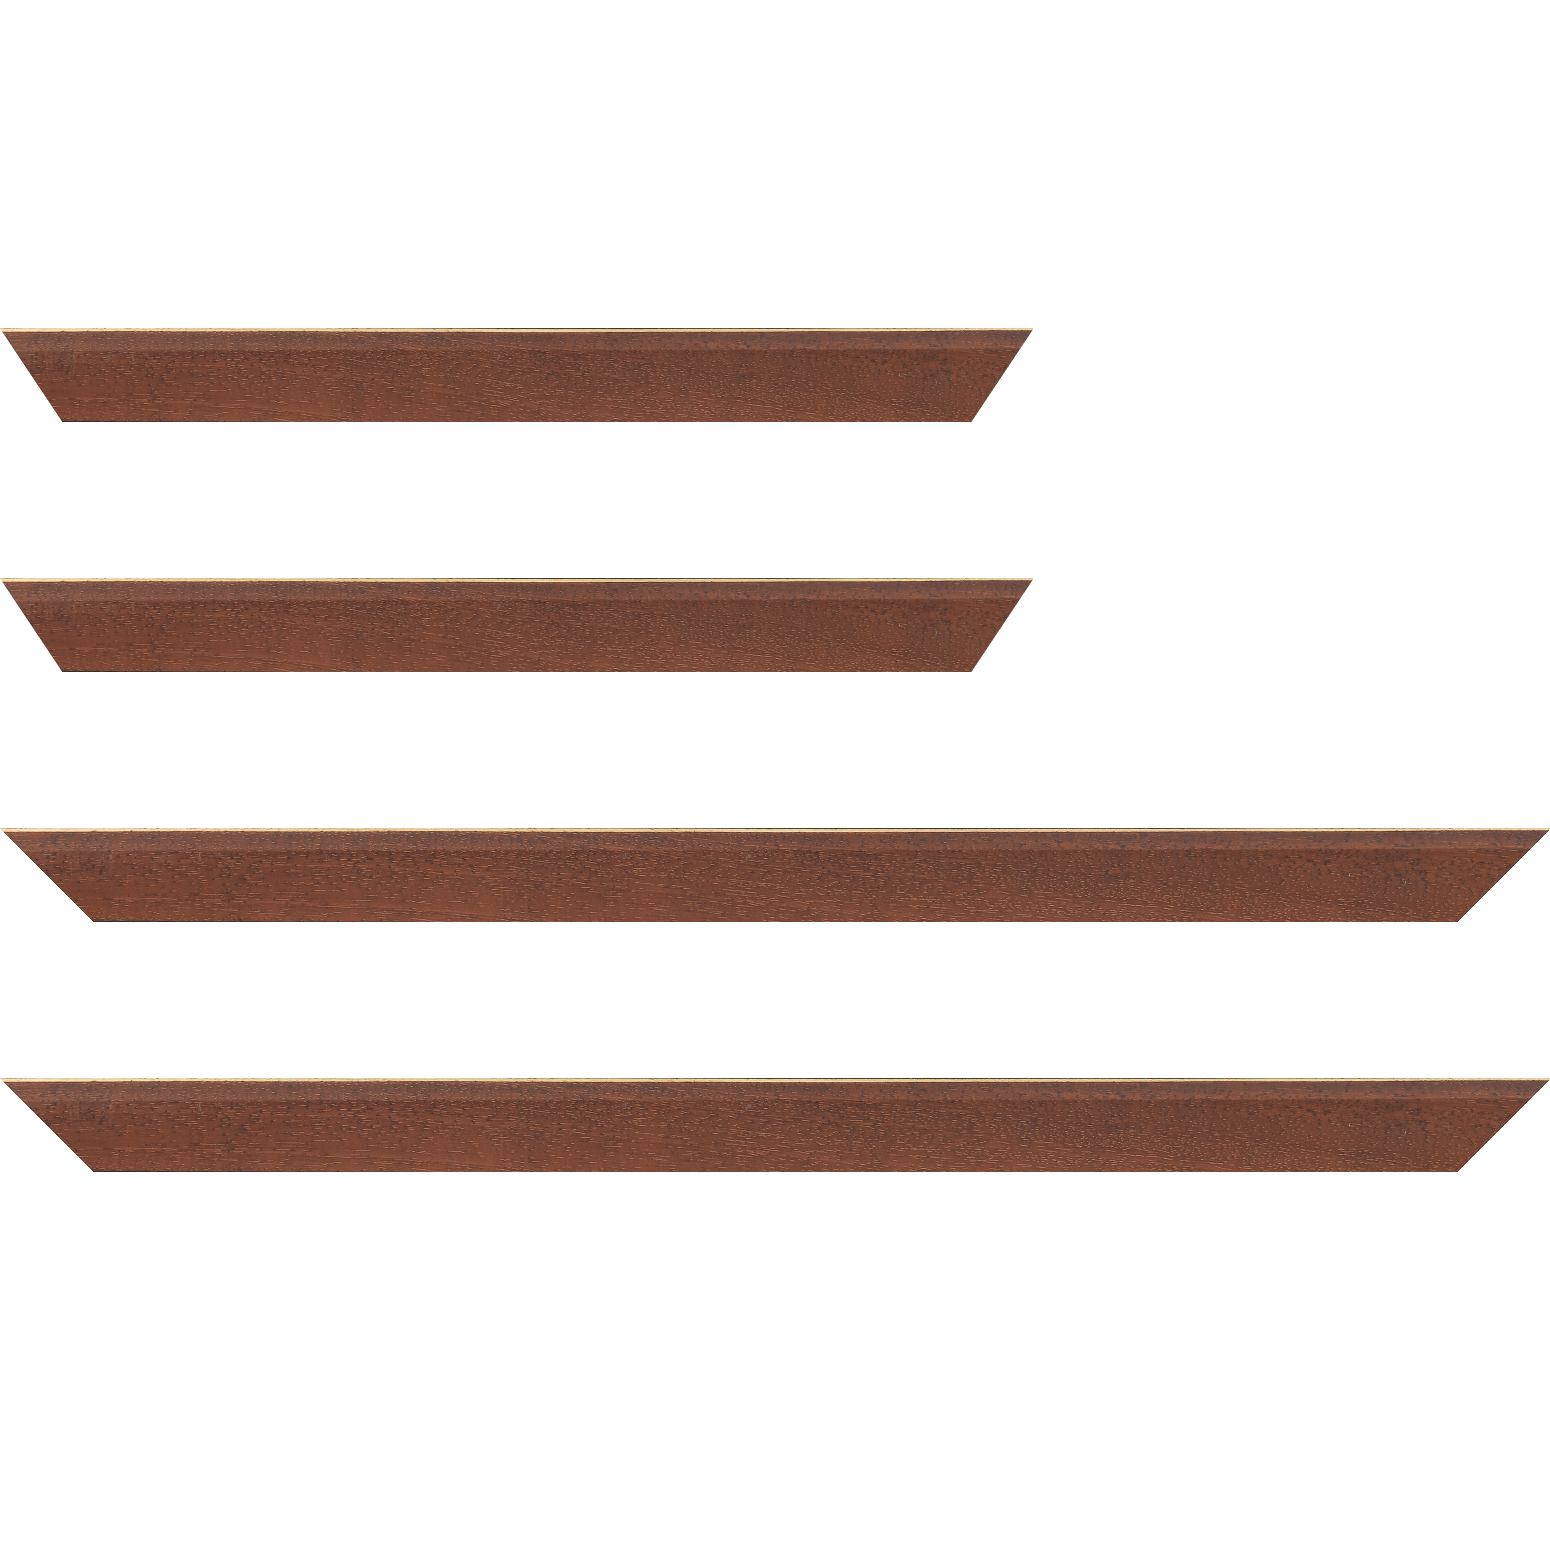 Baguette bois profil plat escalier largeur 3cm couleur marron miel satiné filet créme extérieur - 70x100